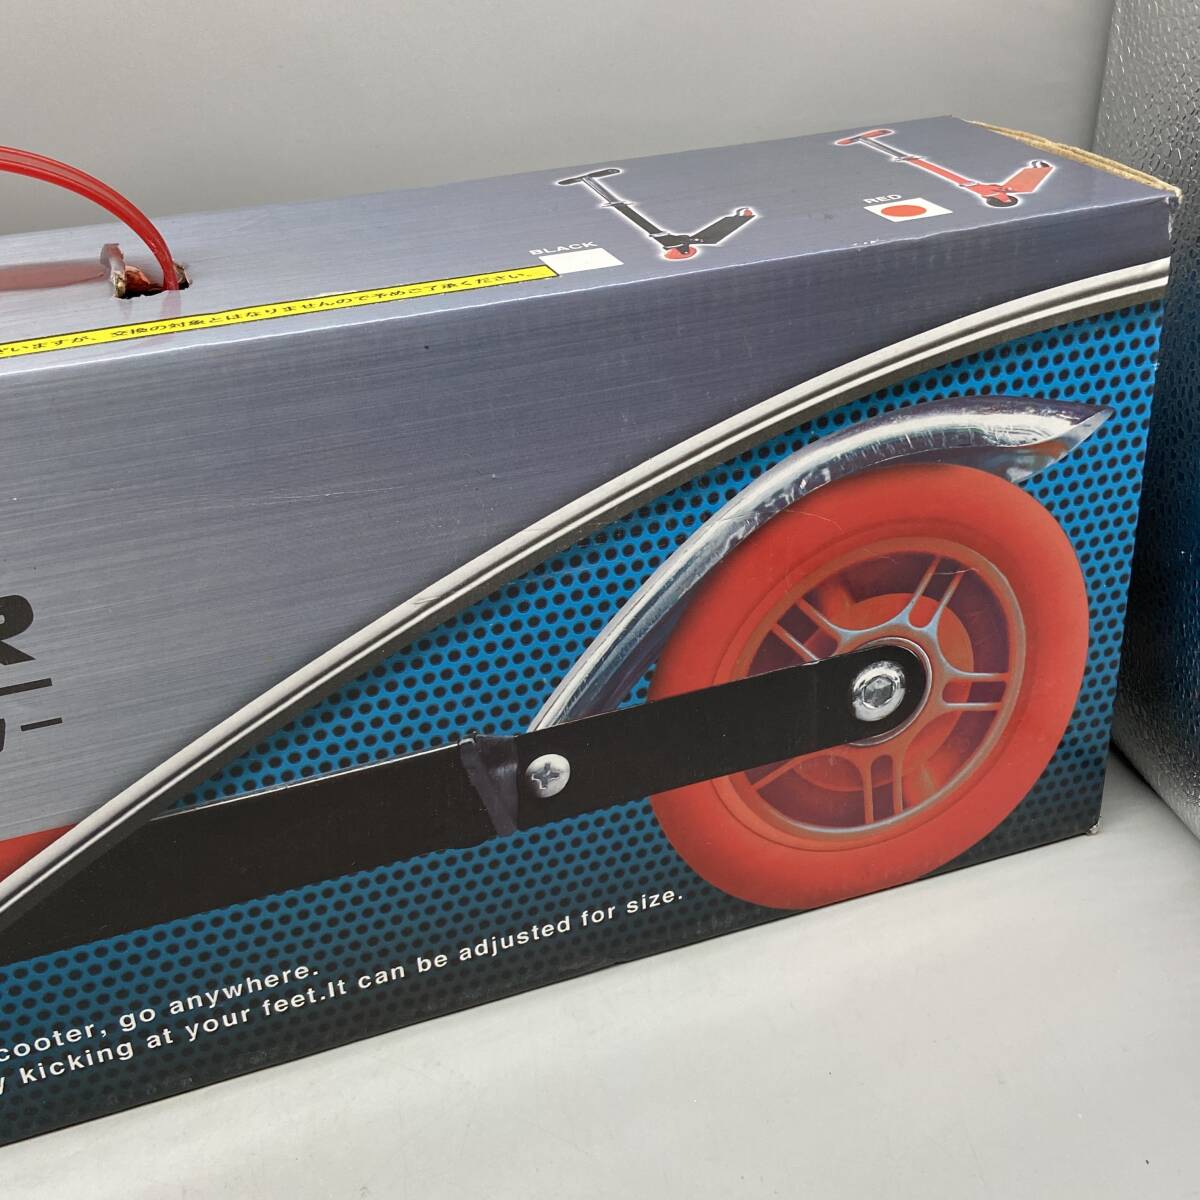 Σ未使用品 キッズスクーター KIDSSCOOTER トーシン産業 レッド 赤色 折り畳み式 ブレーキ搭載 ハンドル高さ調整可能 耐荷重40kgΣN52523の画像3